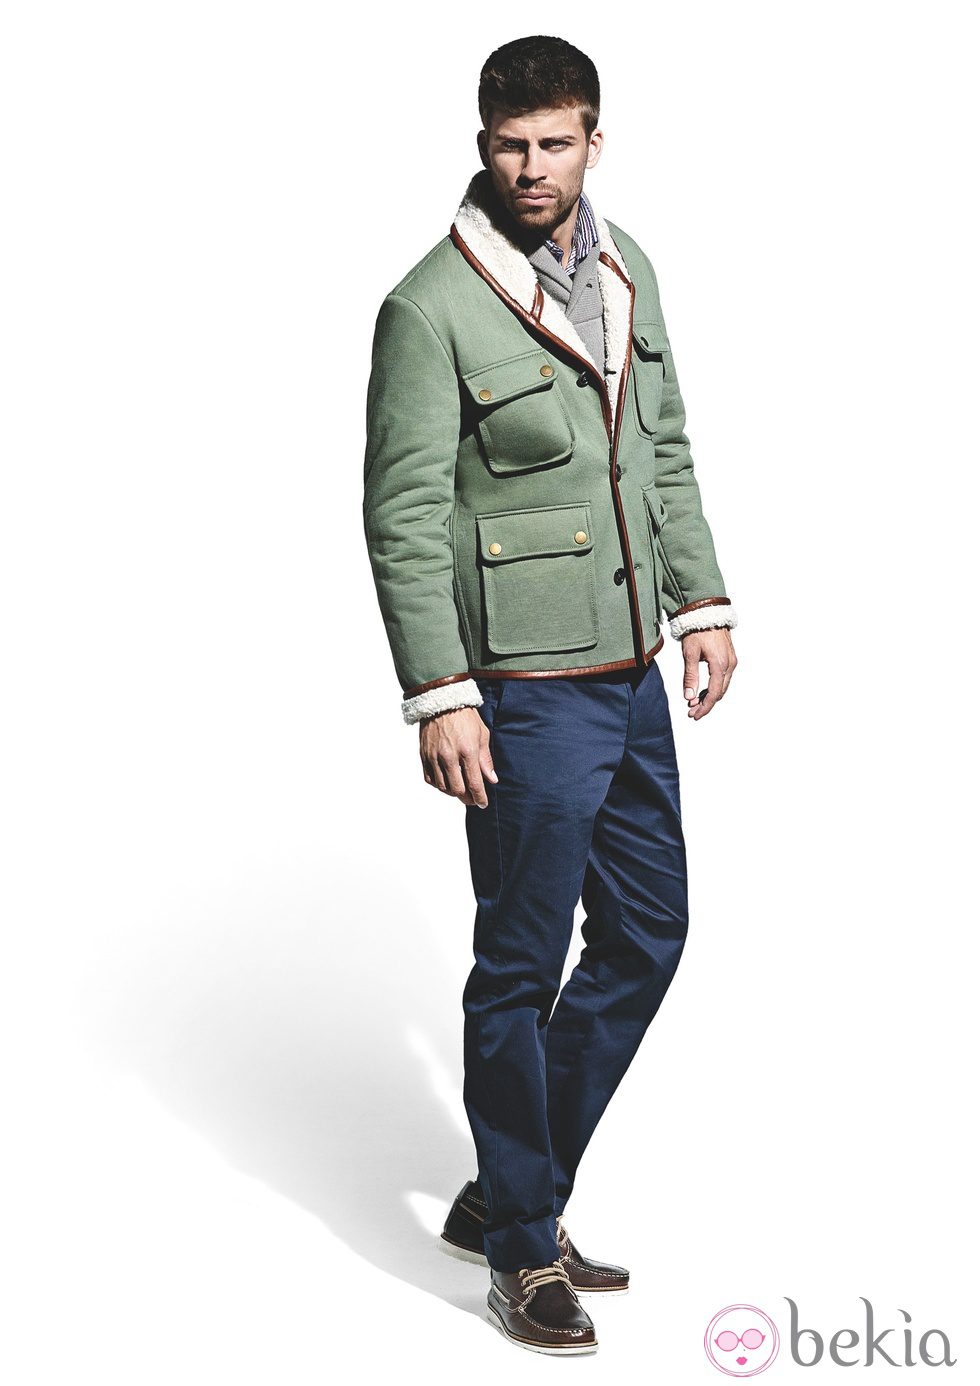 Gerard Piqué con cazadora verde y pantalones azules para la colección otoño-invierno 2011 de H.E. by Mango